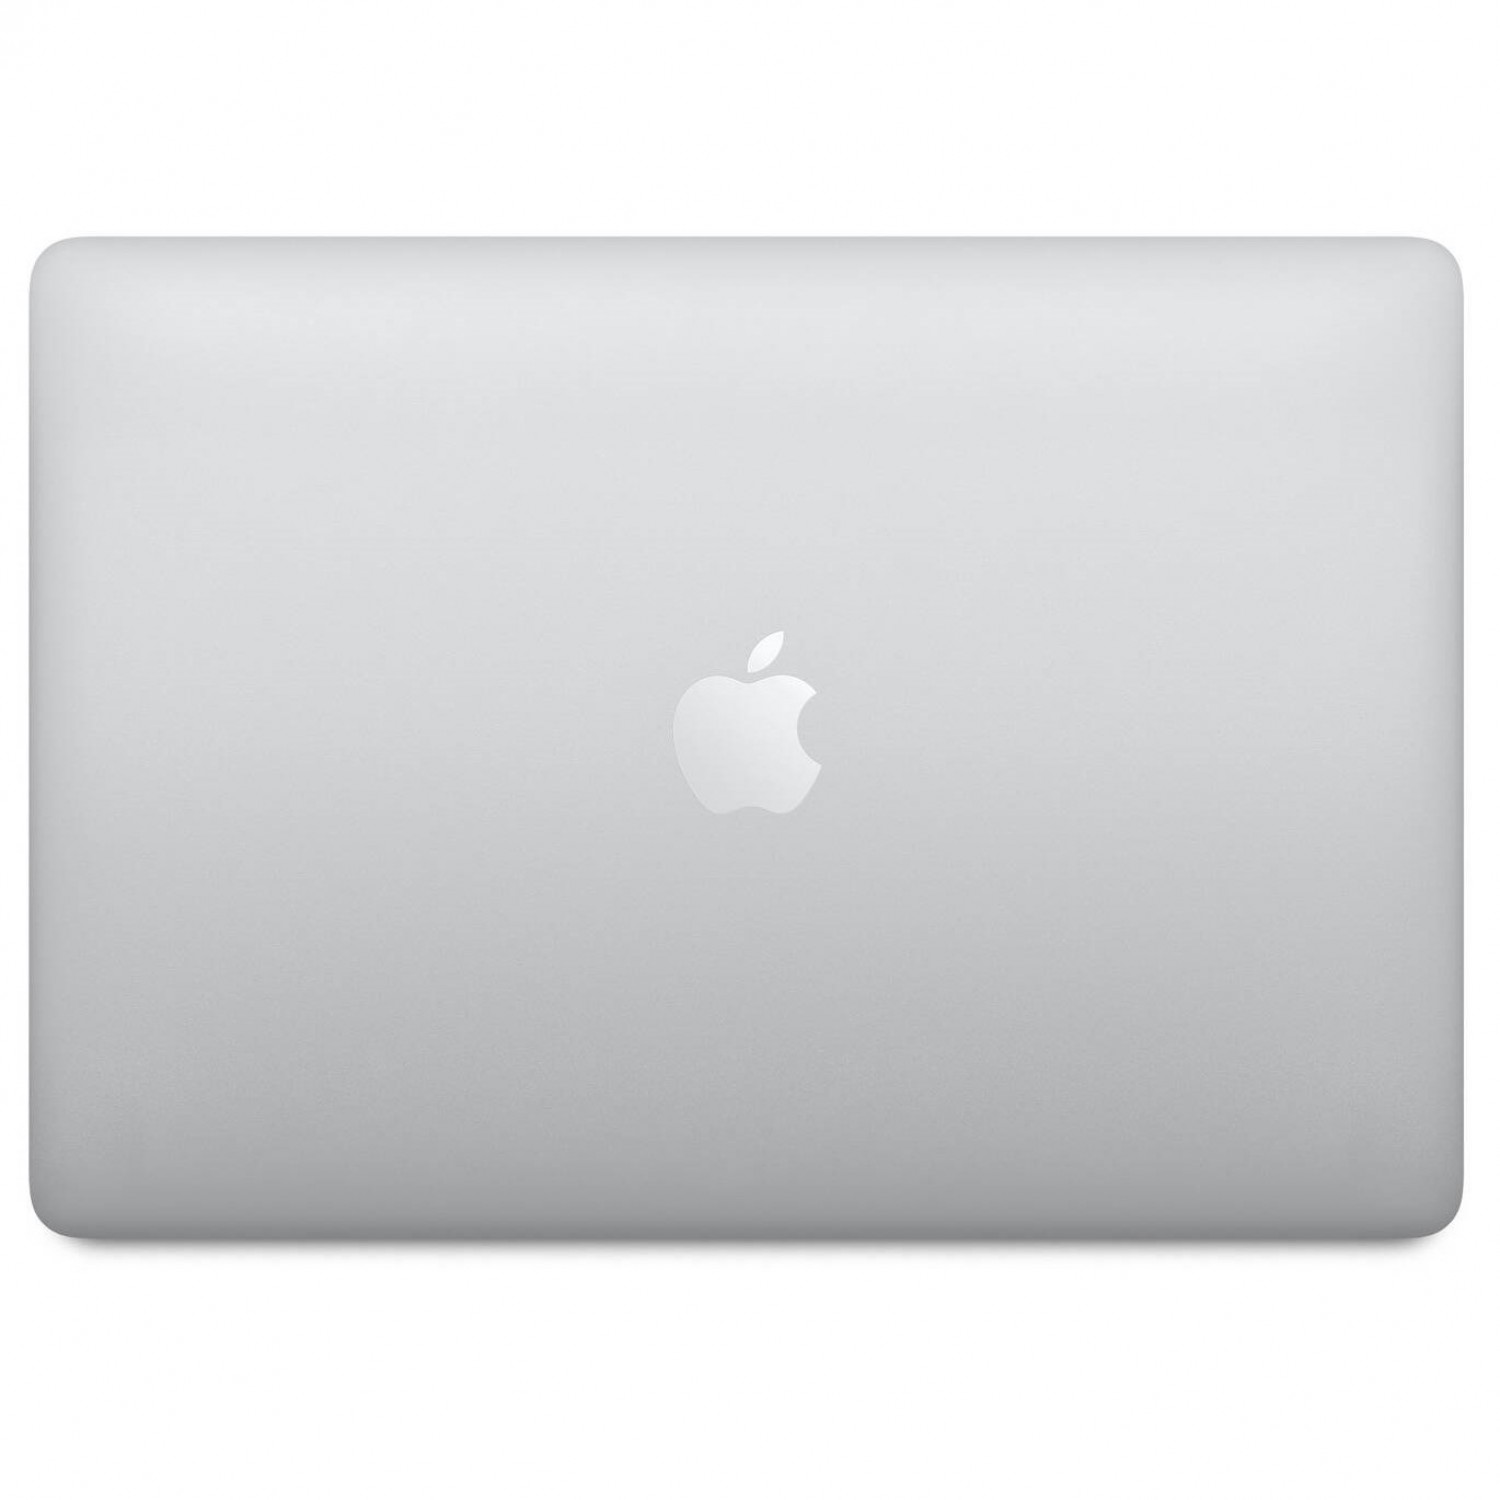 لپ تاپ Apple MacBook Pro 13 2020 CTO - Silver - B-5